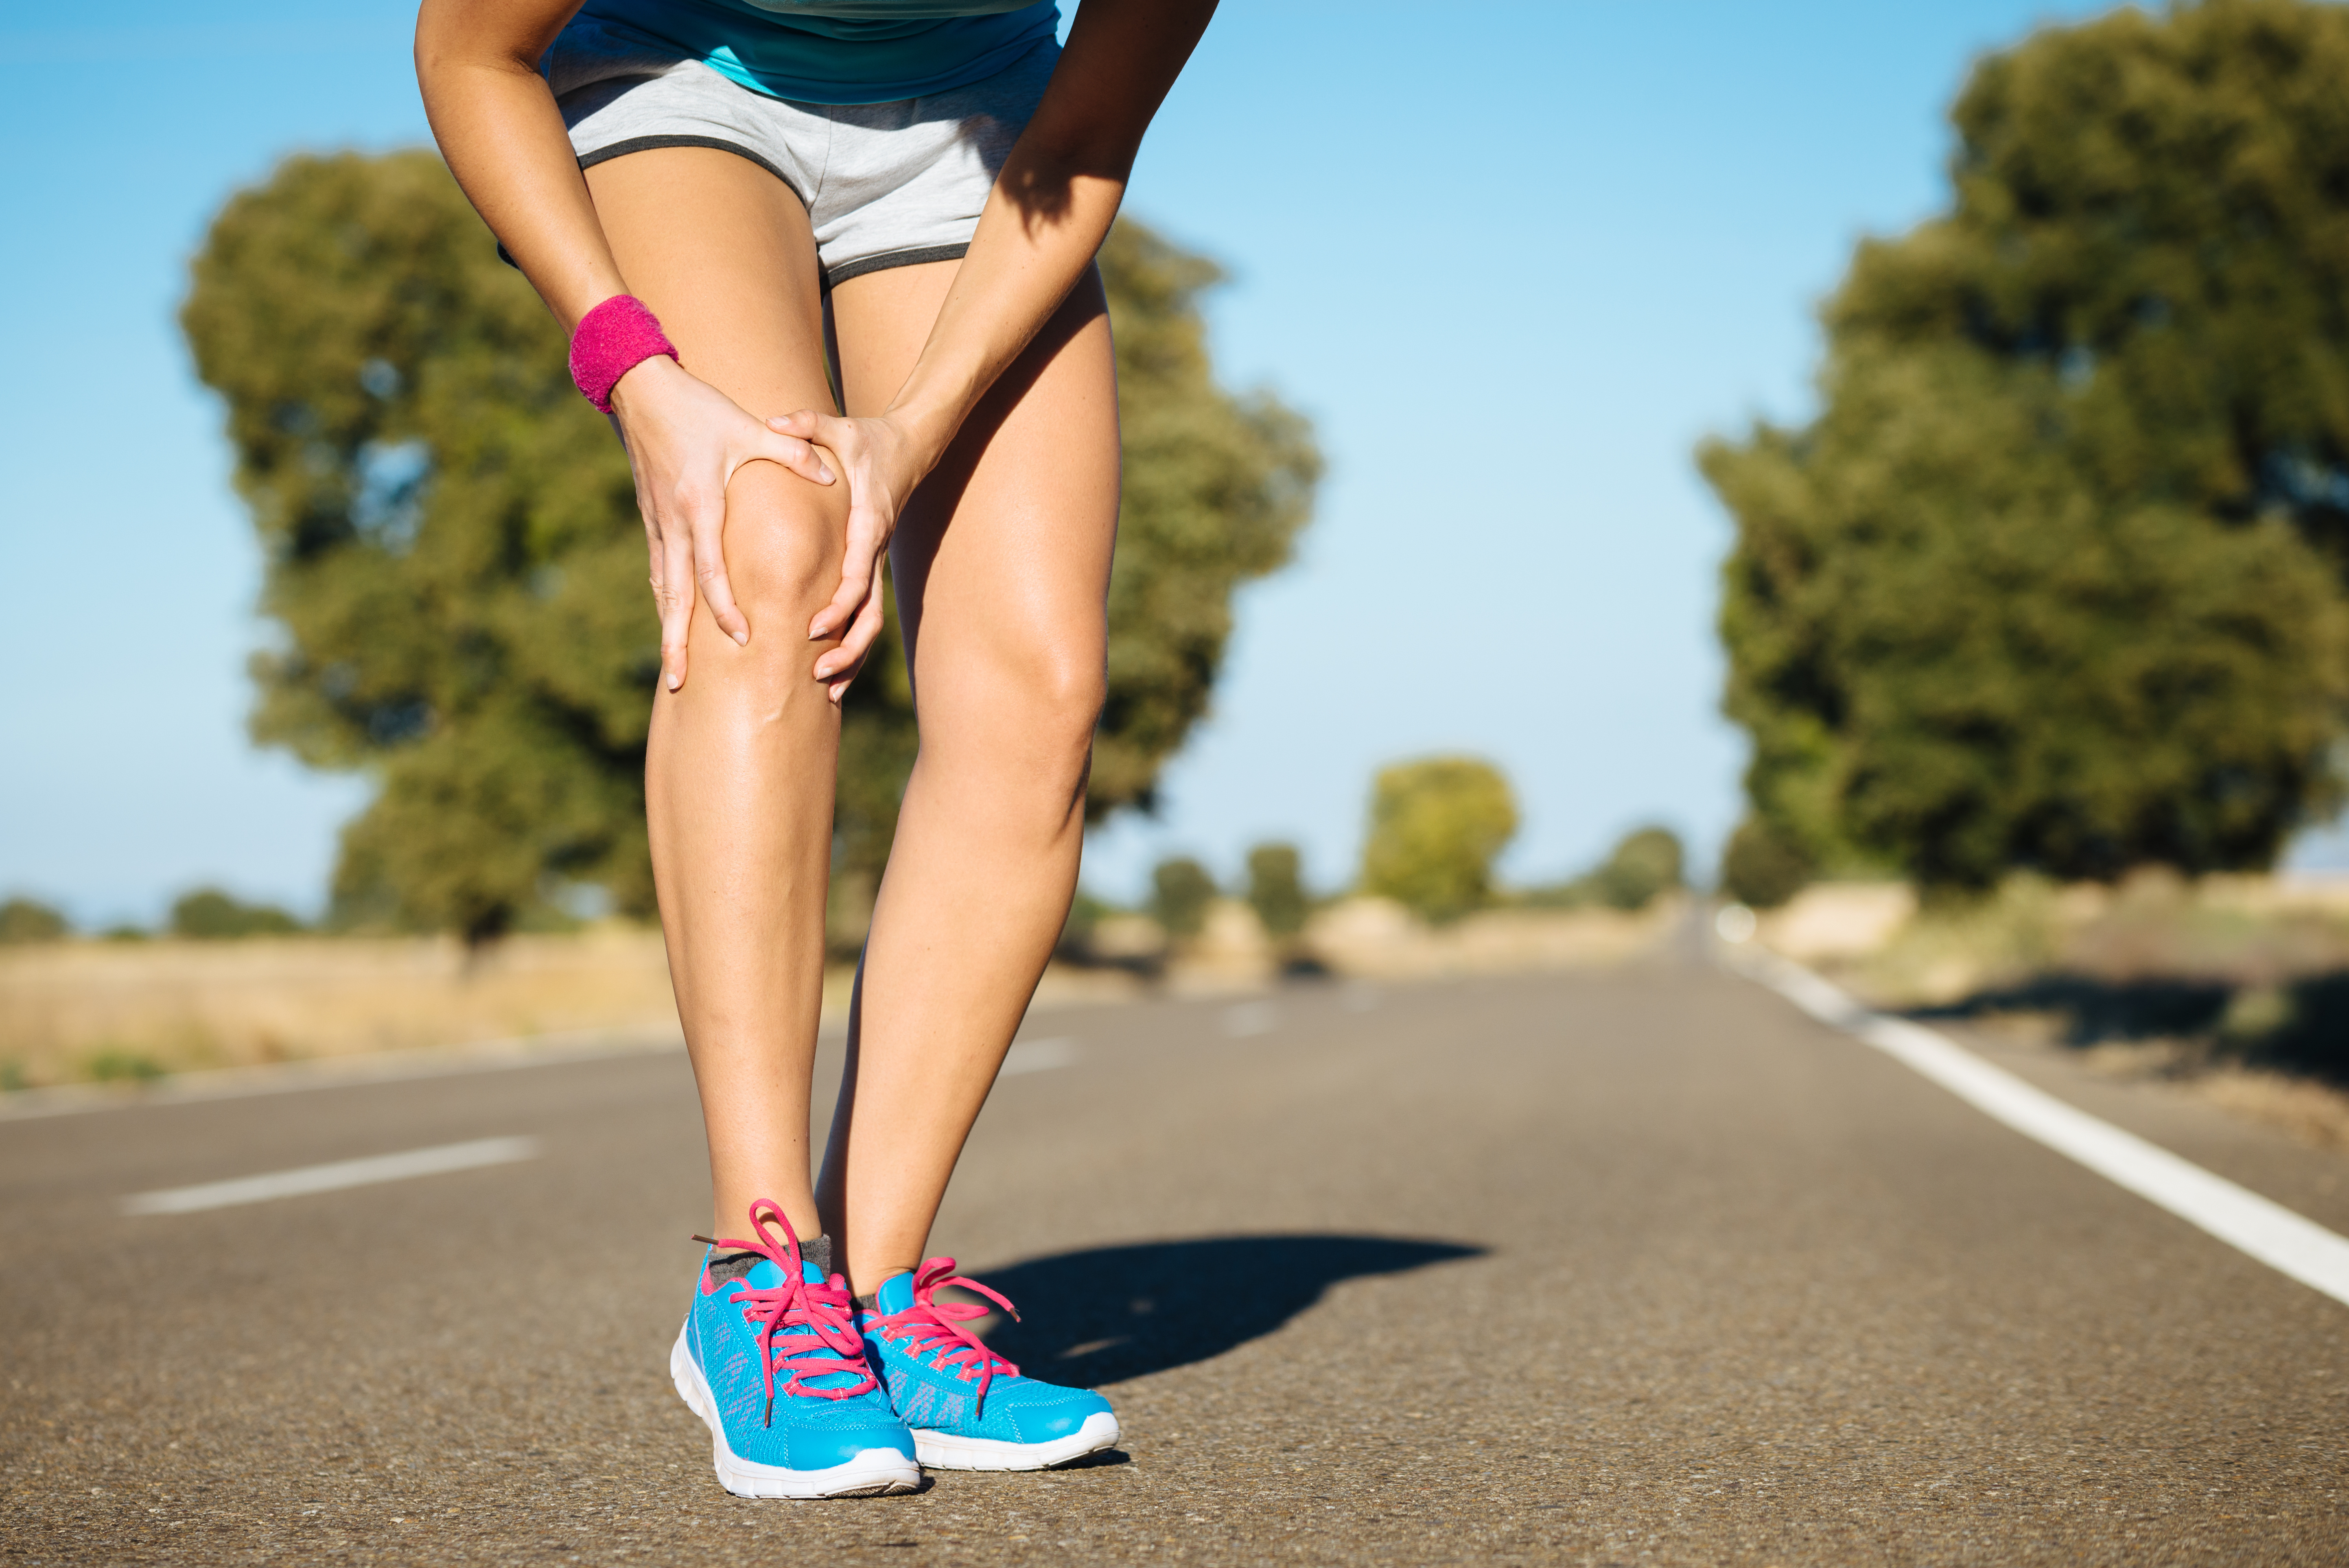 Runner holding injured knee